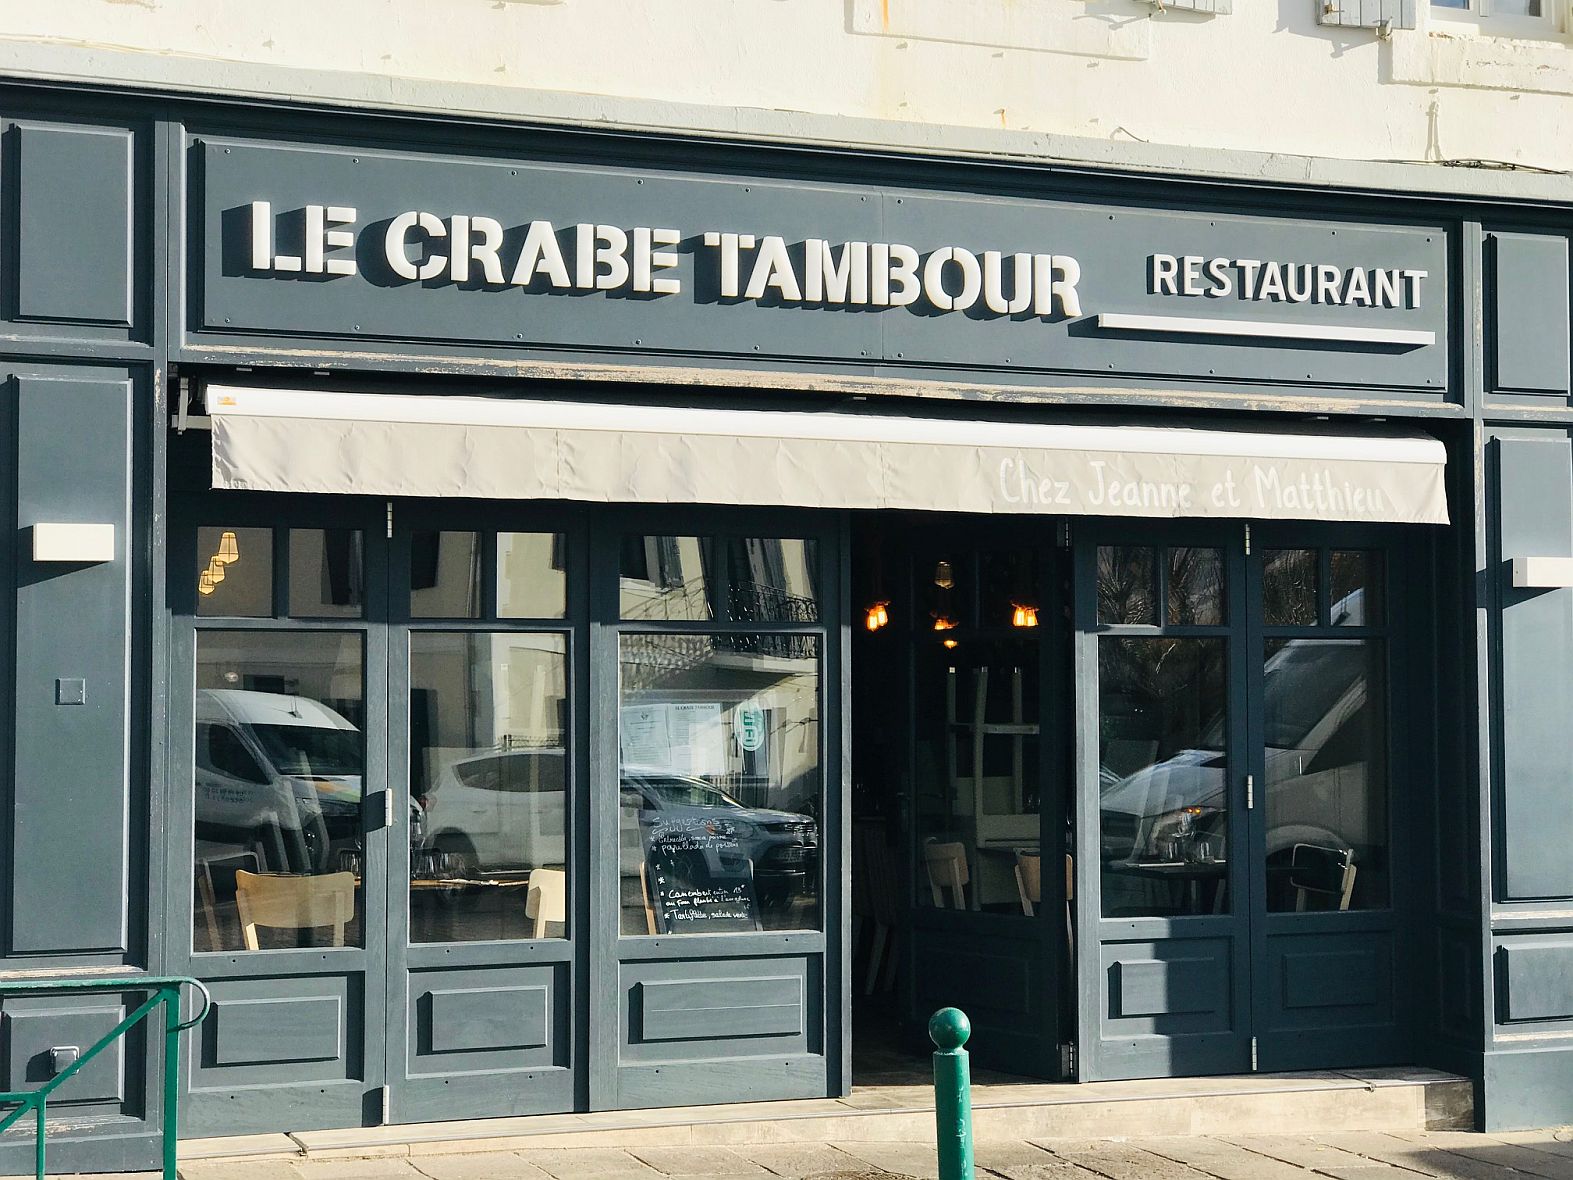 Crabe tambour (le)